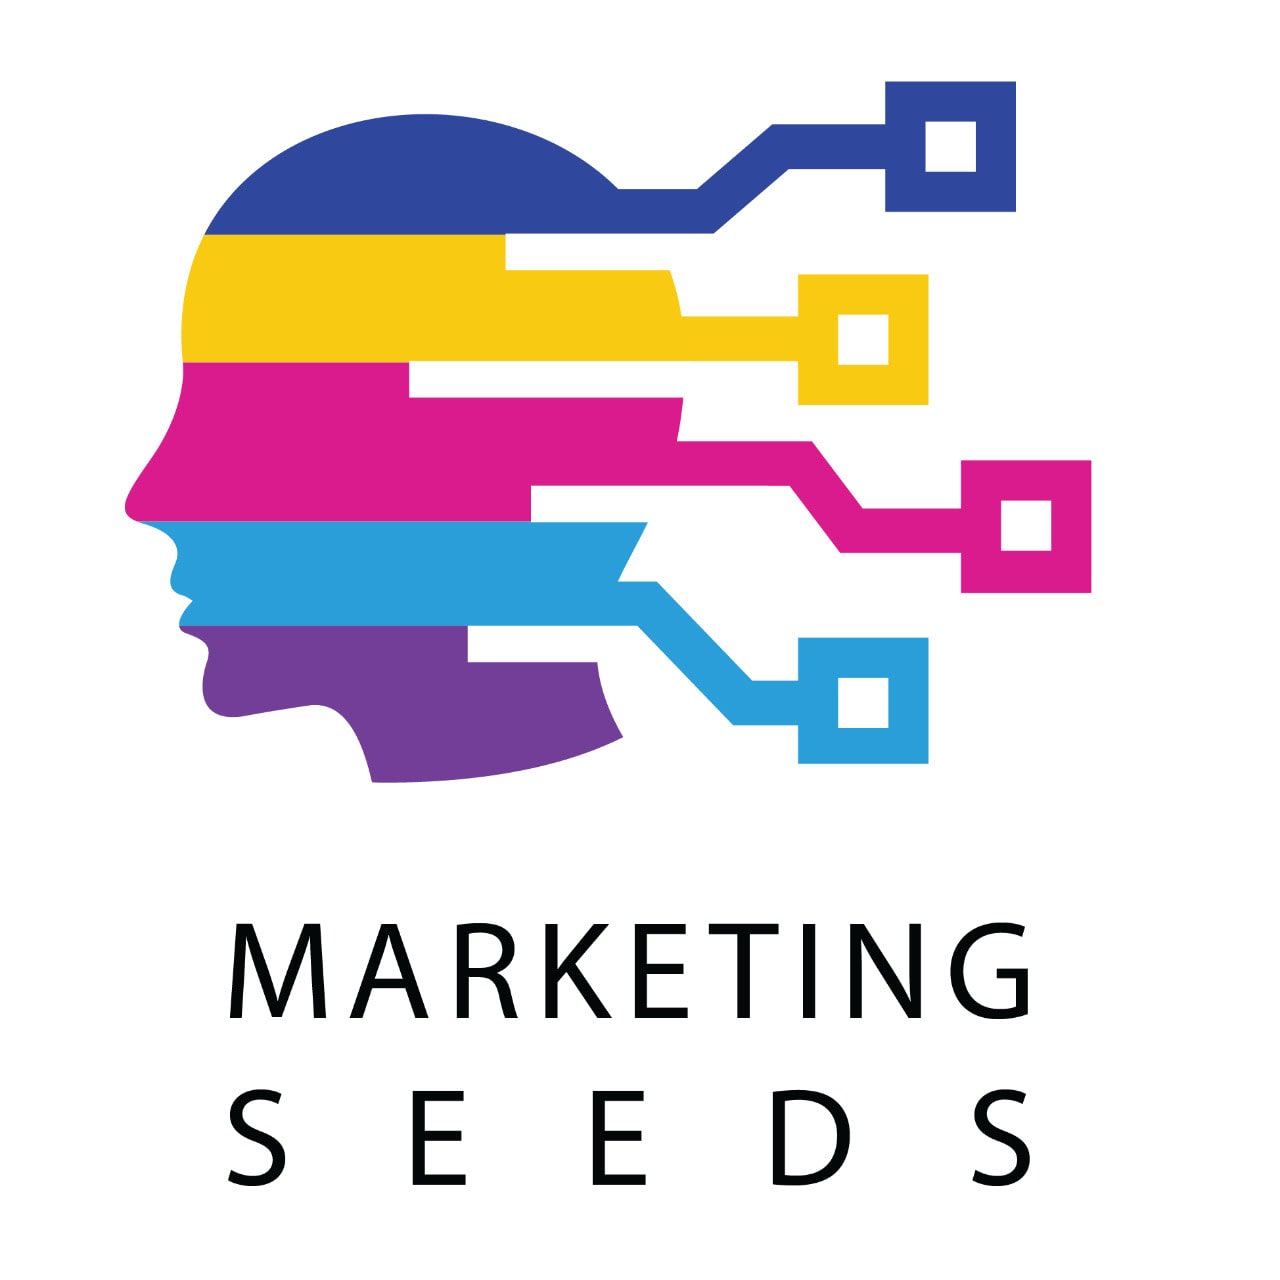 Marketing Seeds